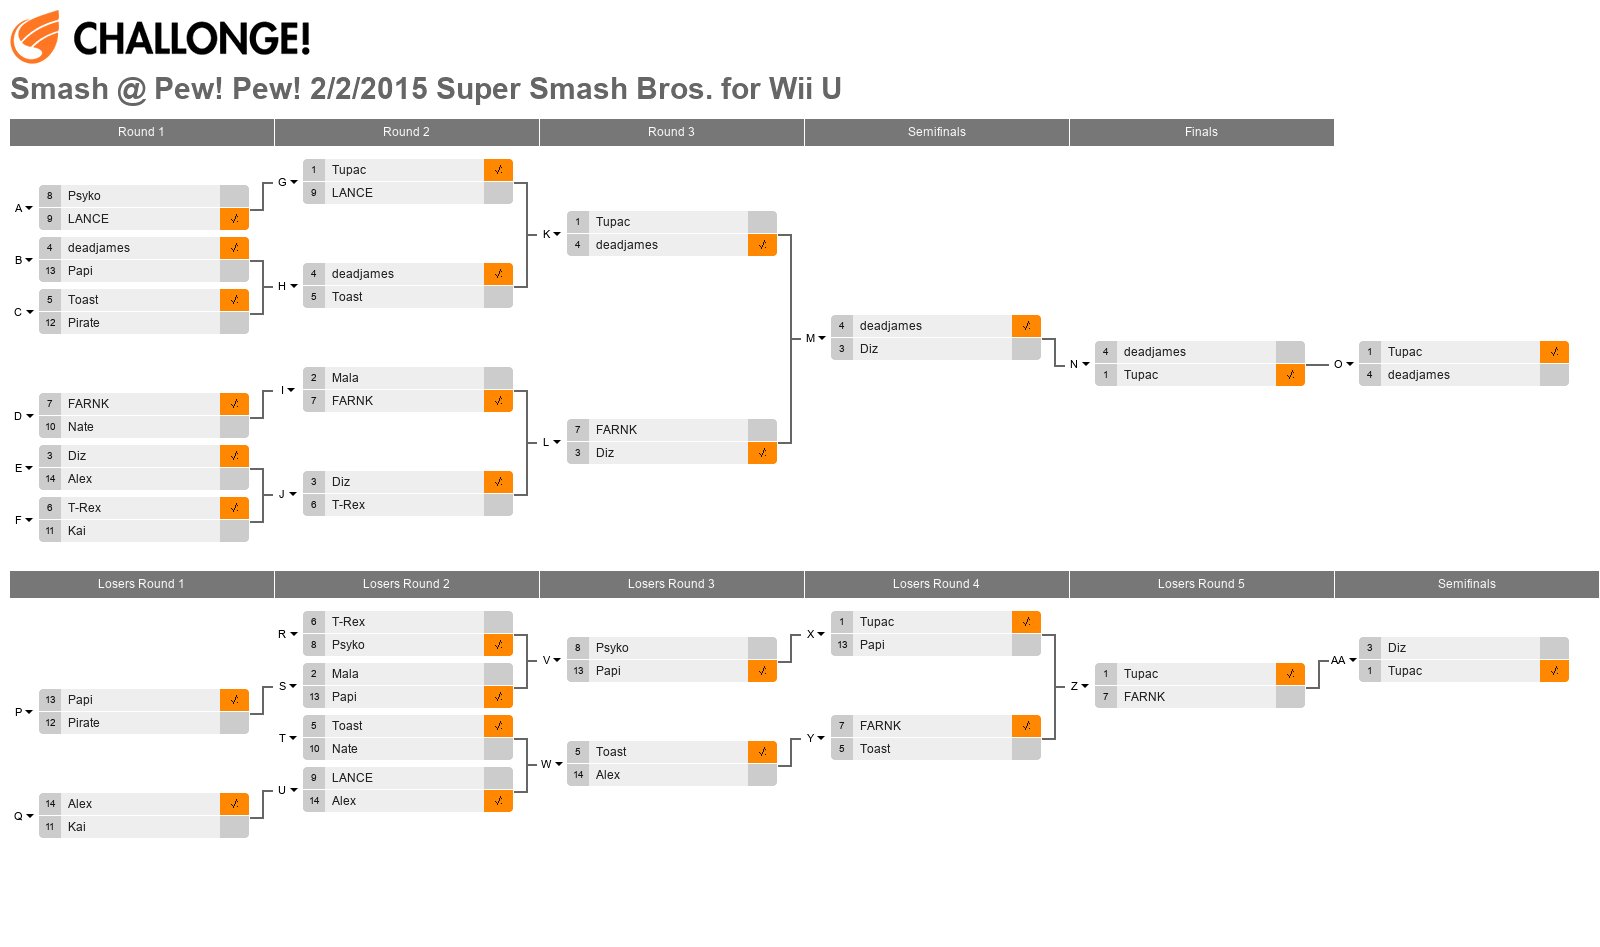 Smash @ Pew! Pew! 2/2/2015 Super Smash Bros. for Wii U